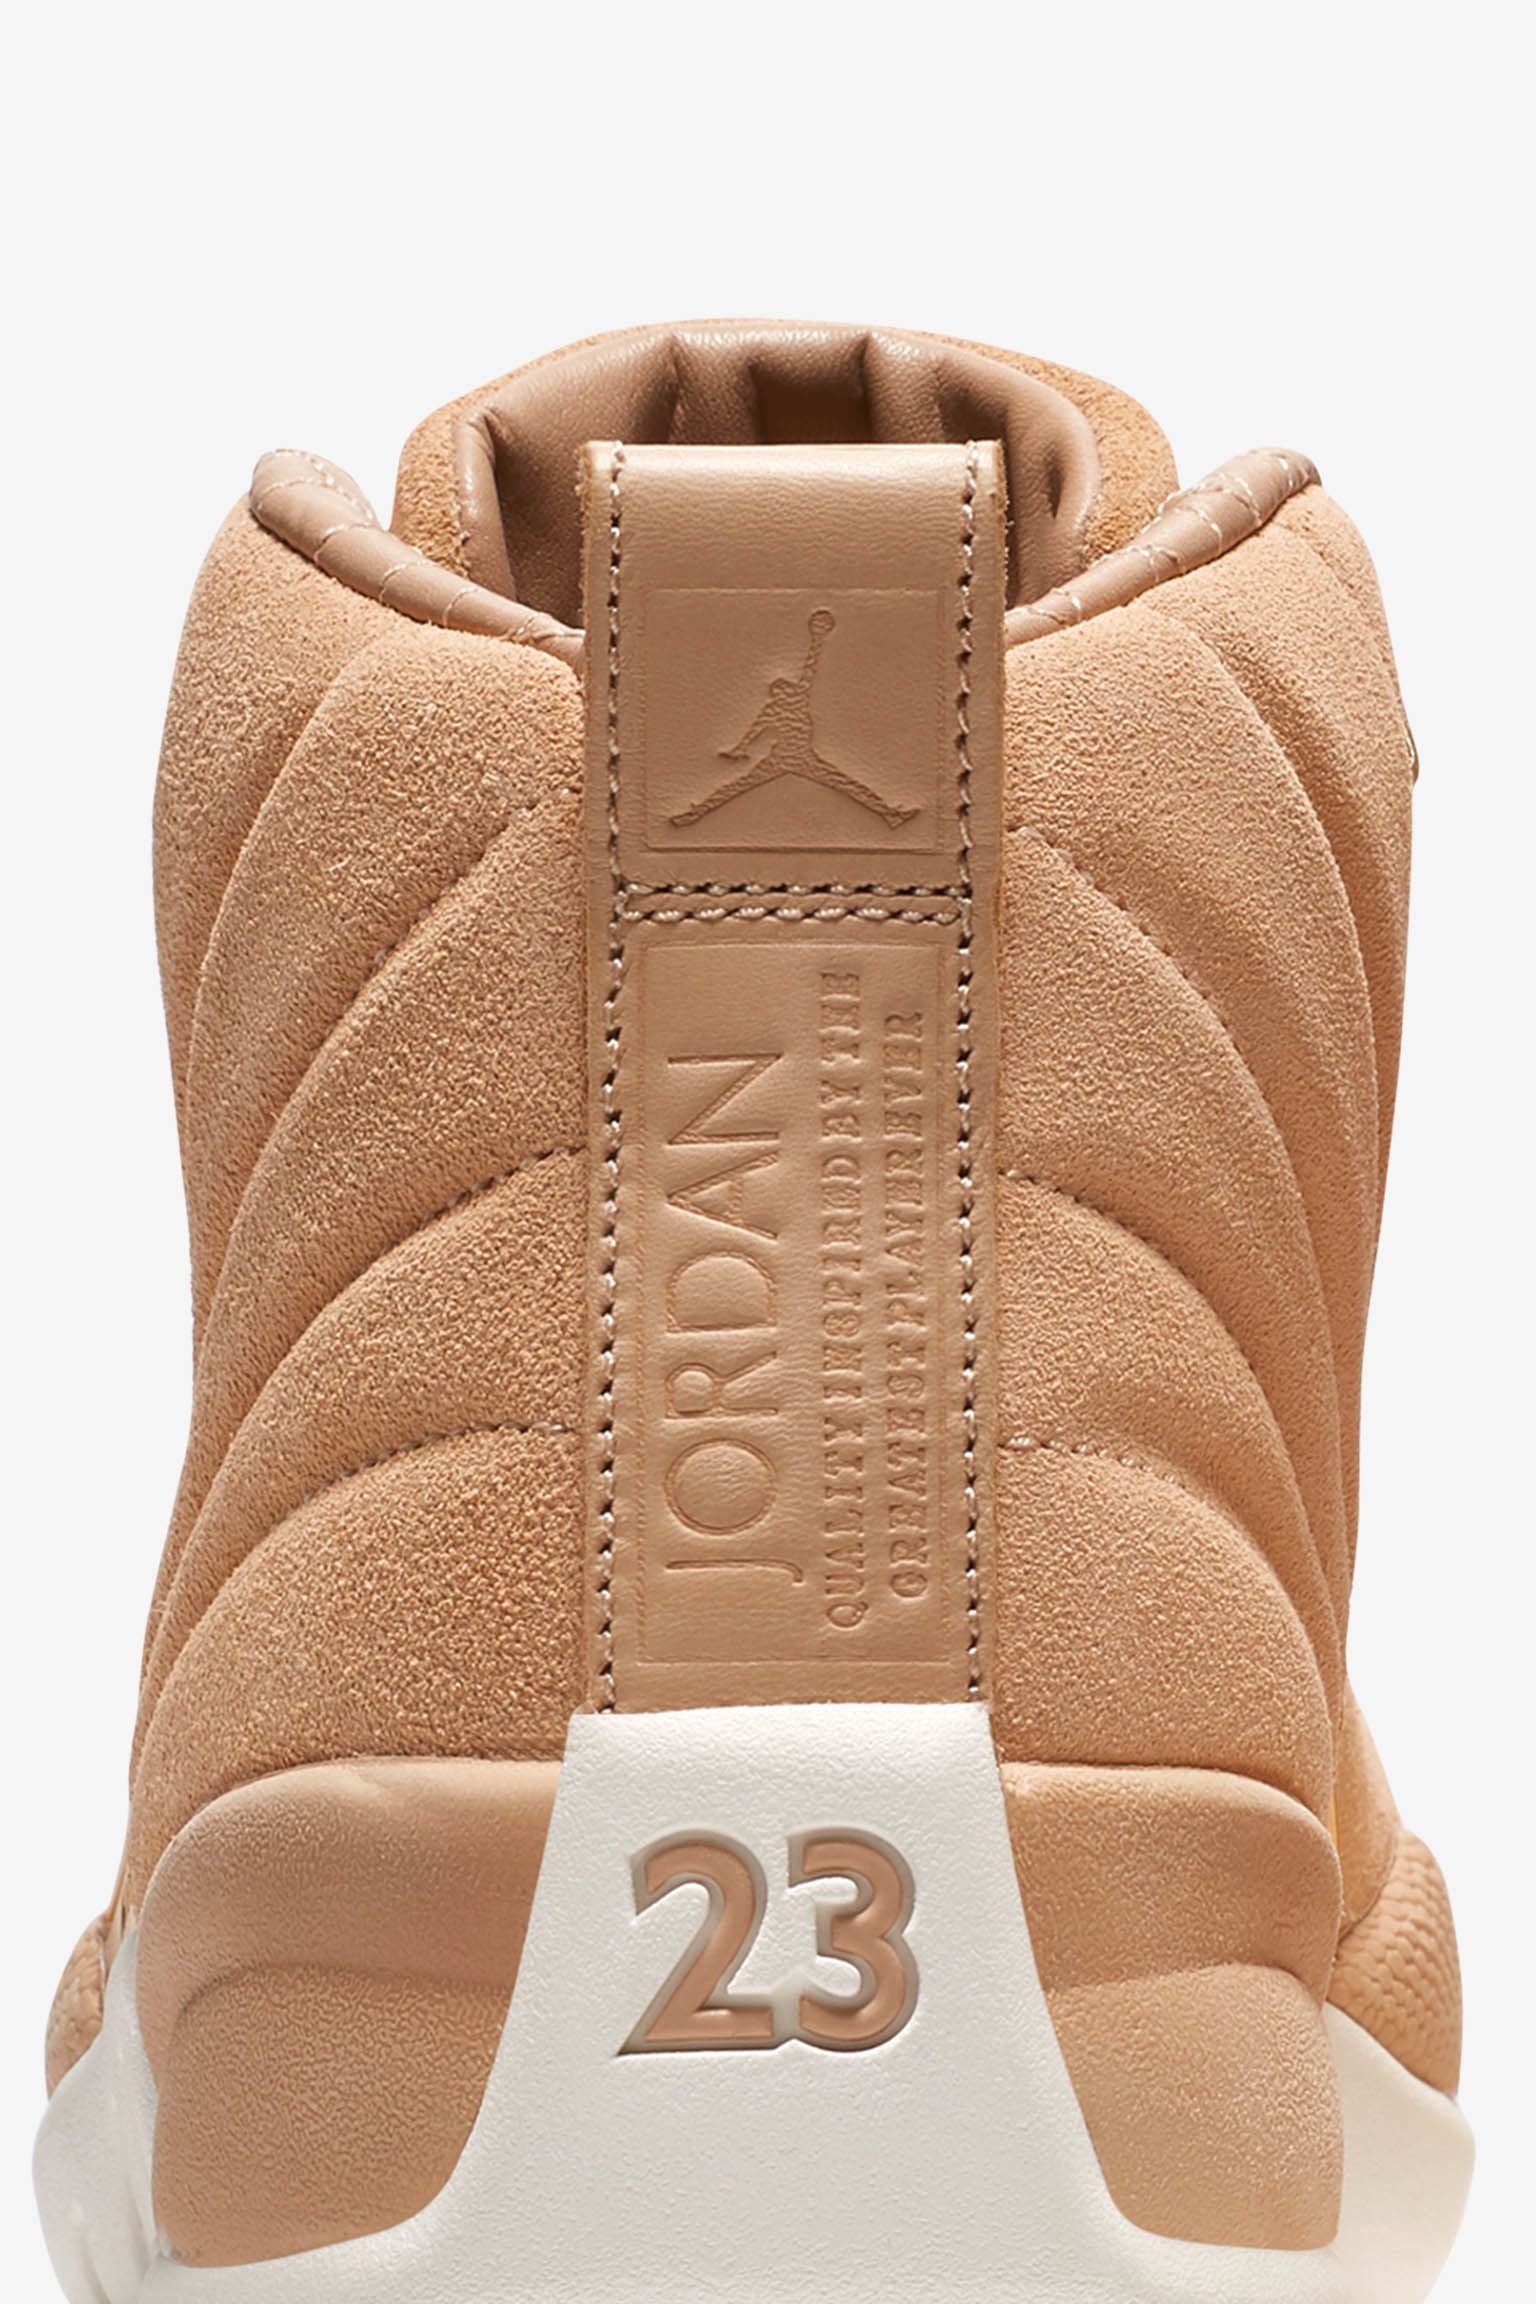 jordan 12 basketball leather